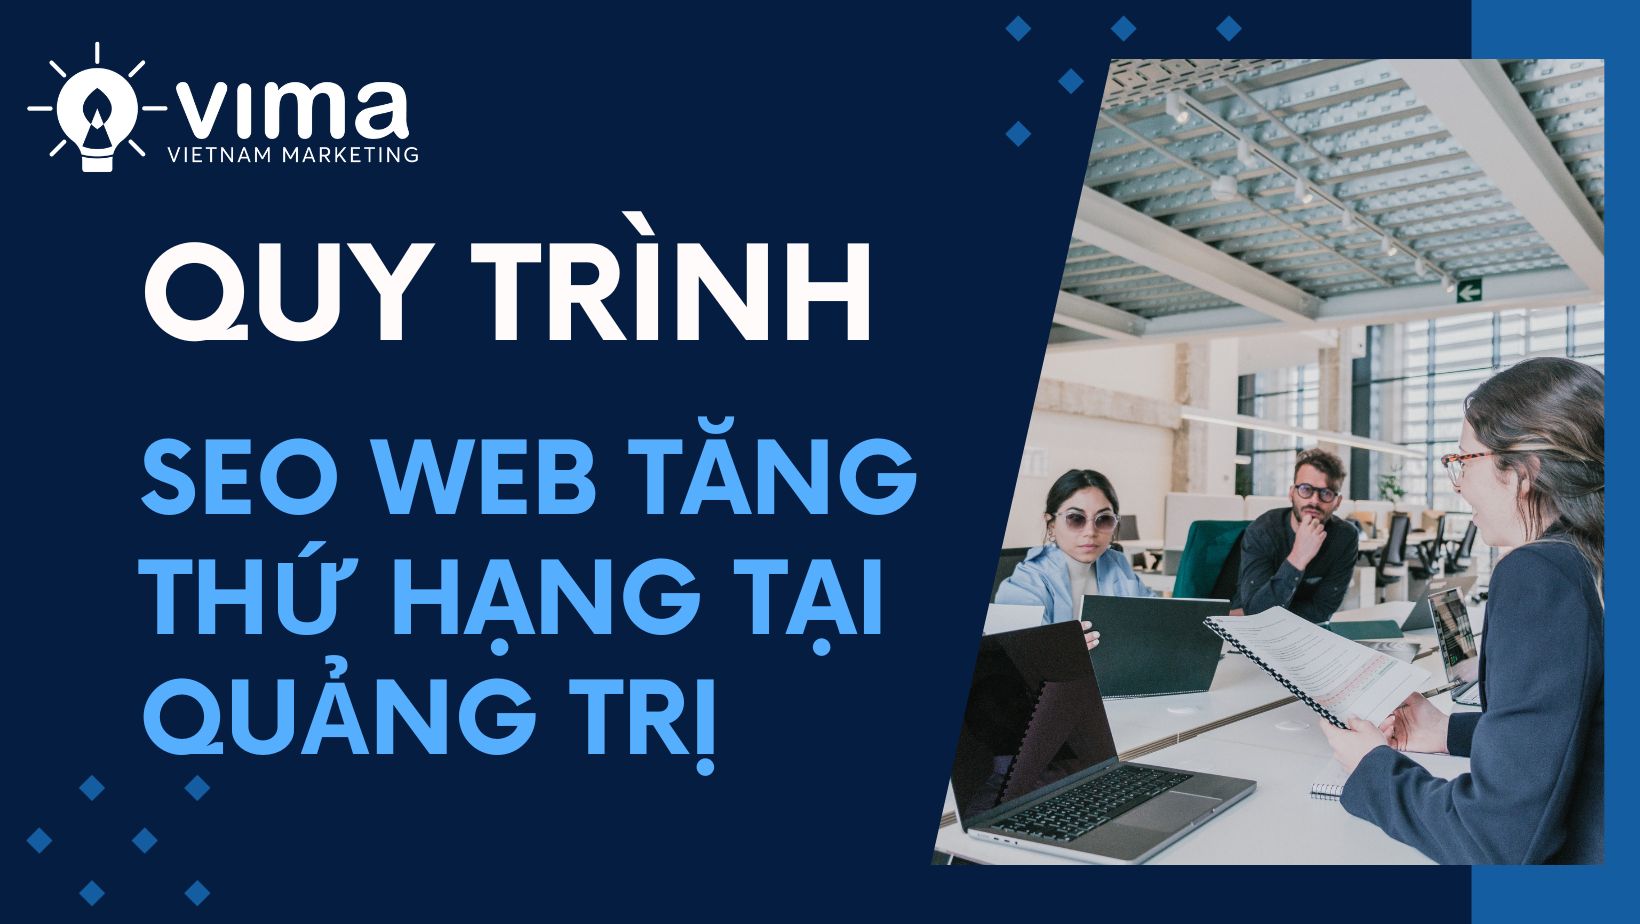 Tìm hiểu Quy trình SEO Web tăng thứ hạng tại Quảng Trị hiệu quả của Việt Nam Marketing